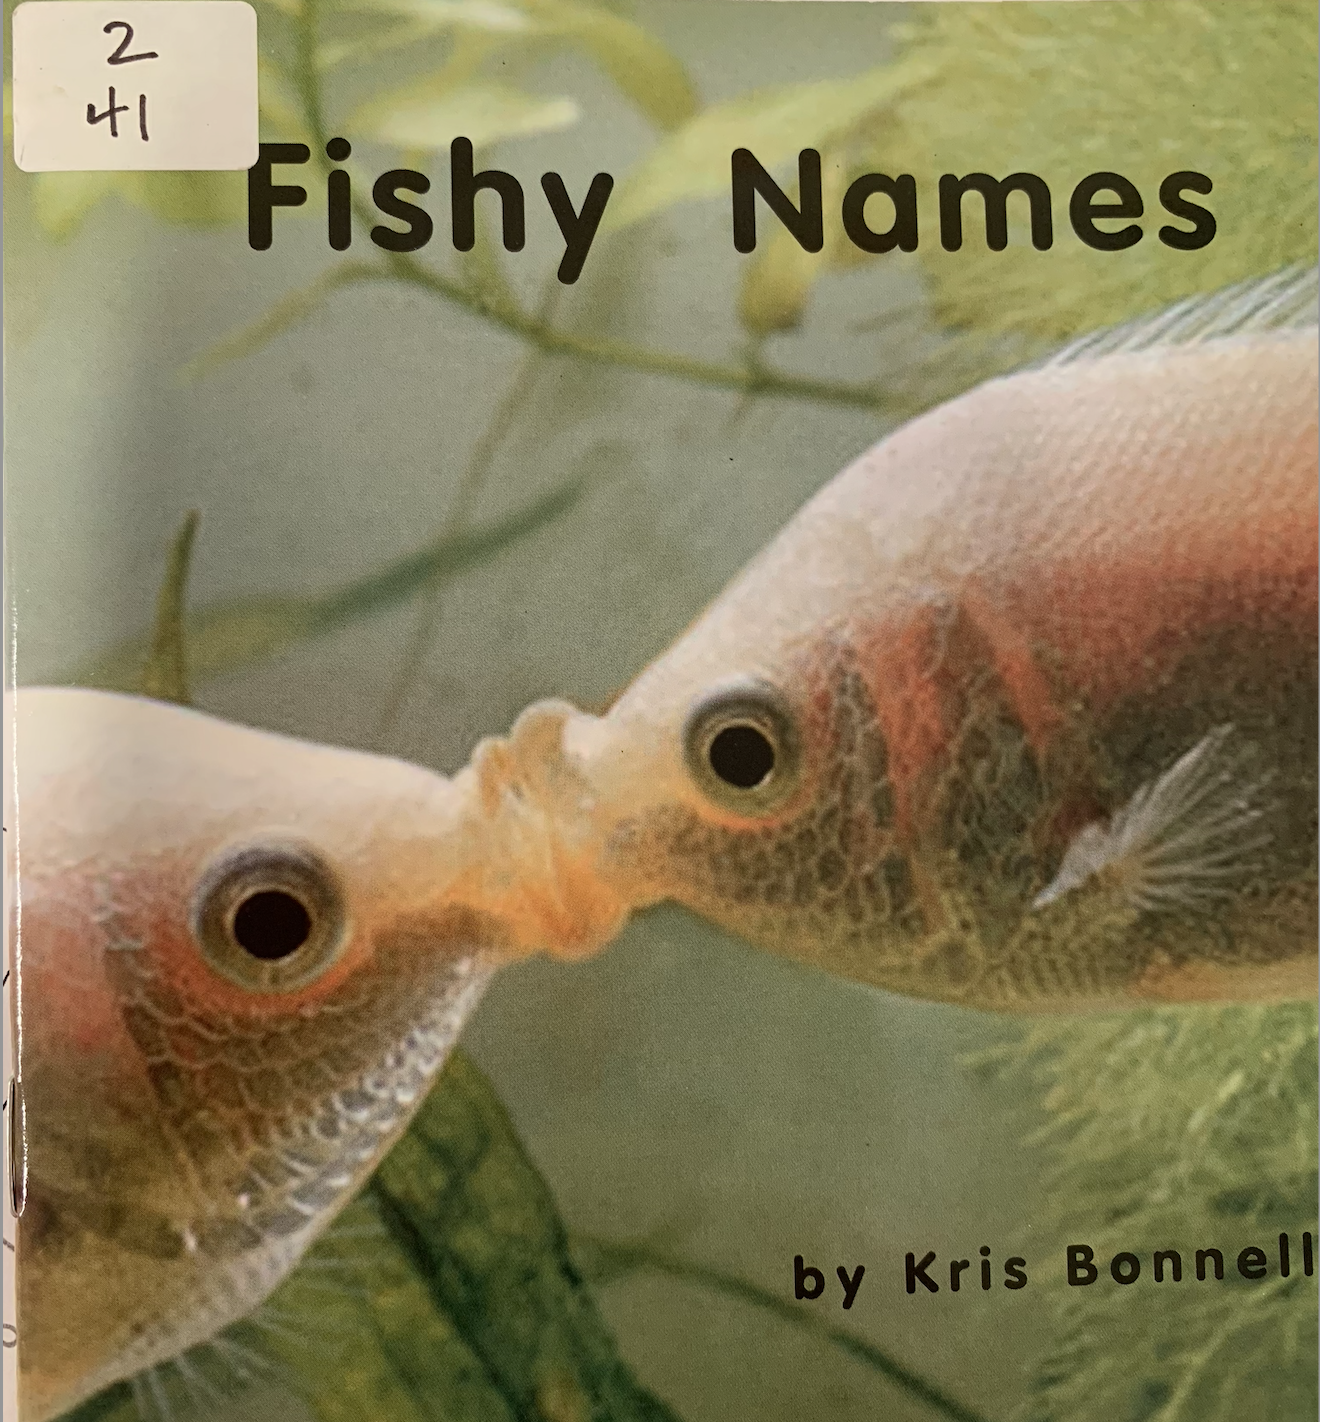 Fishy names!